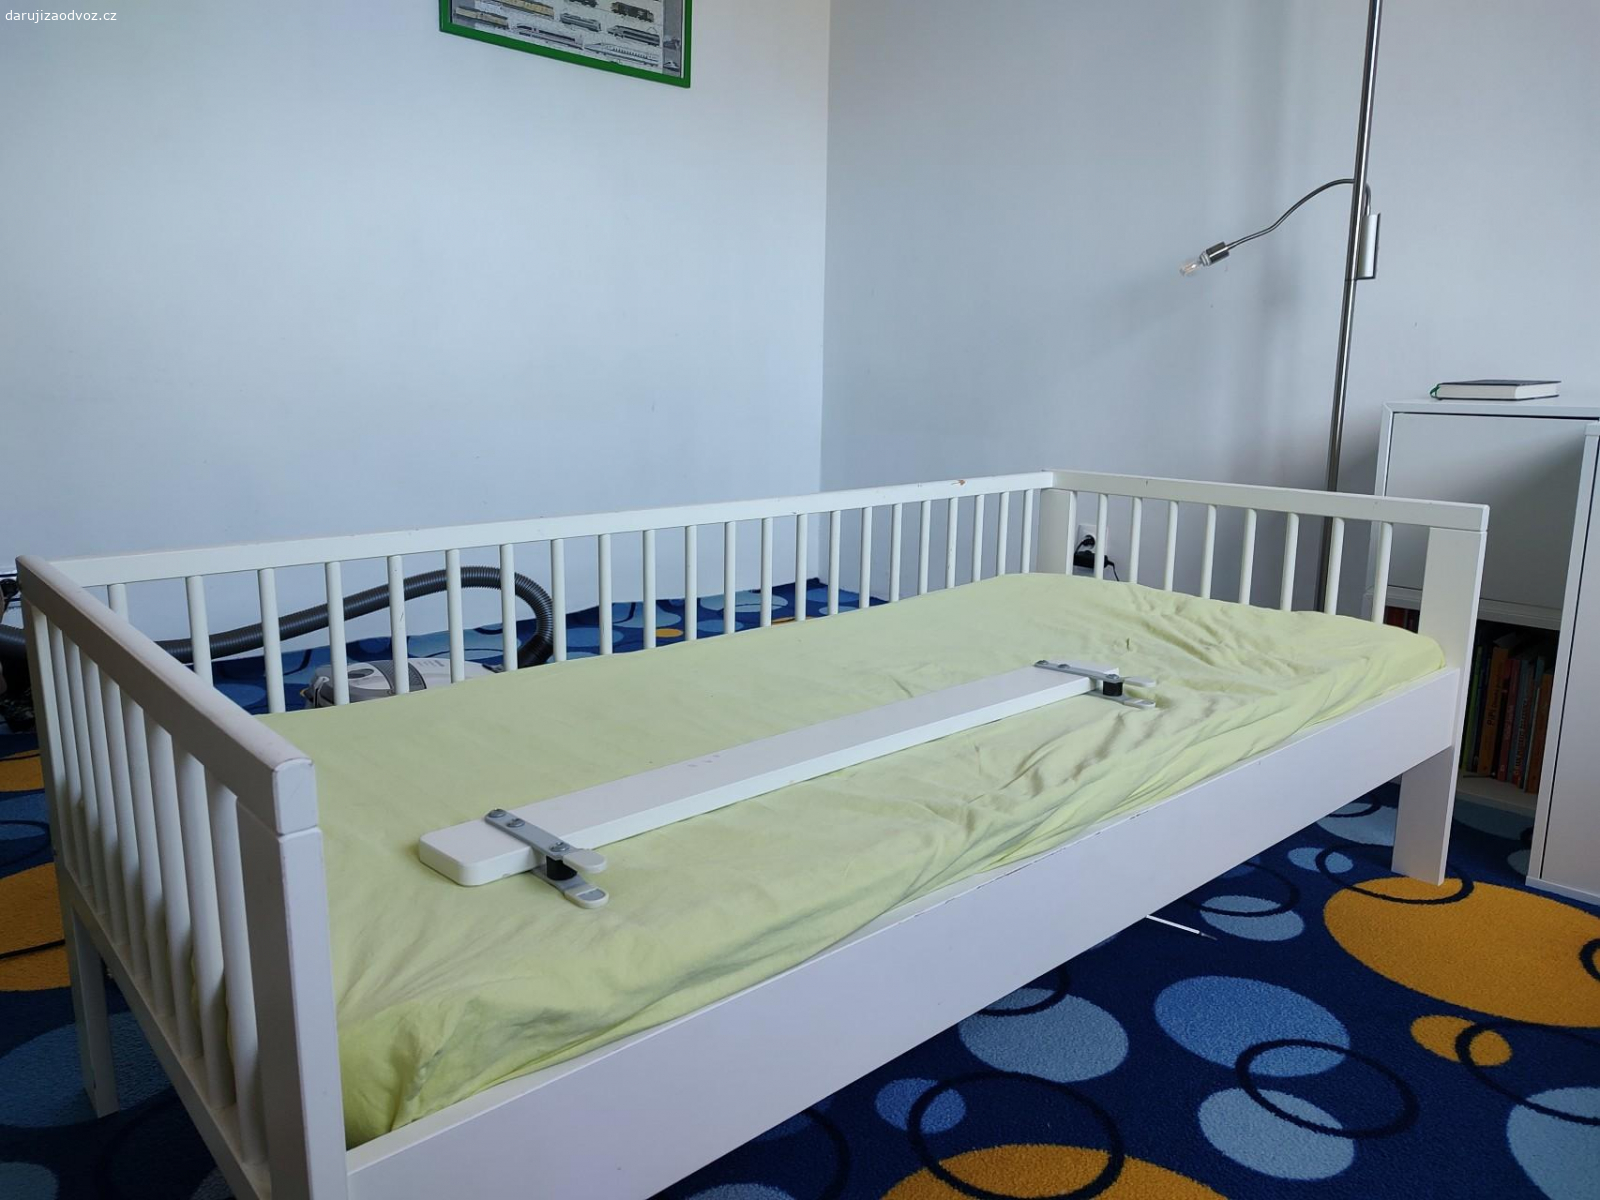 Dětská postel IKEA. Dětská postel IKEA z roku 2015. Stav odpovídá stáří. Včetně matrace. Ve složeném stavu.